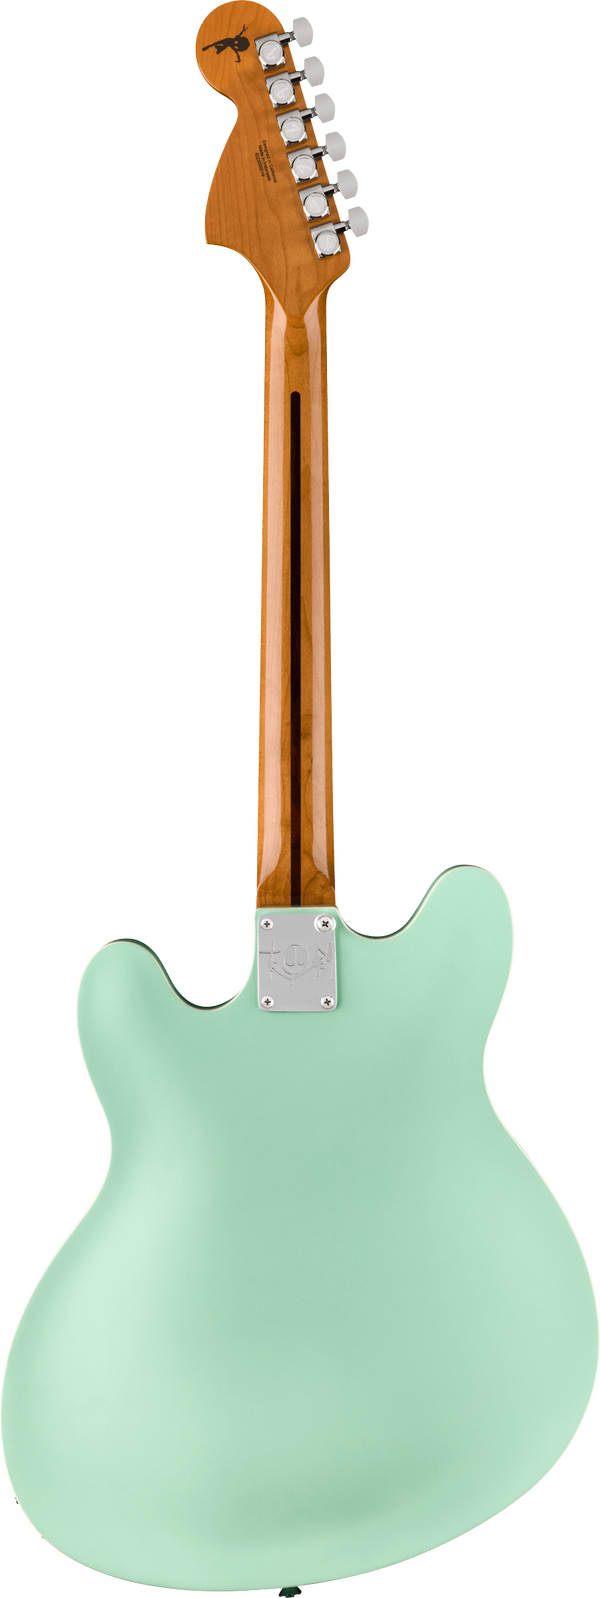 Fender Tom DeLonge Starcaster Satin Surf Green